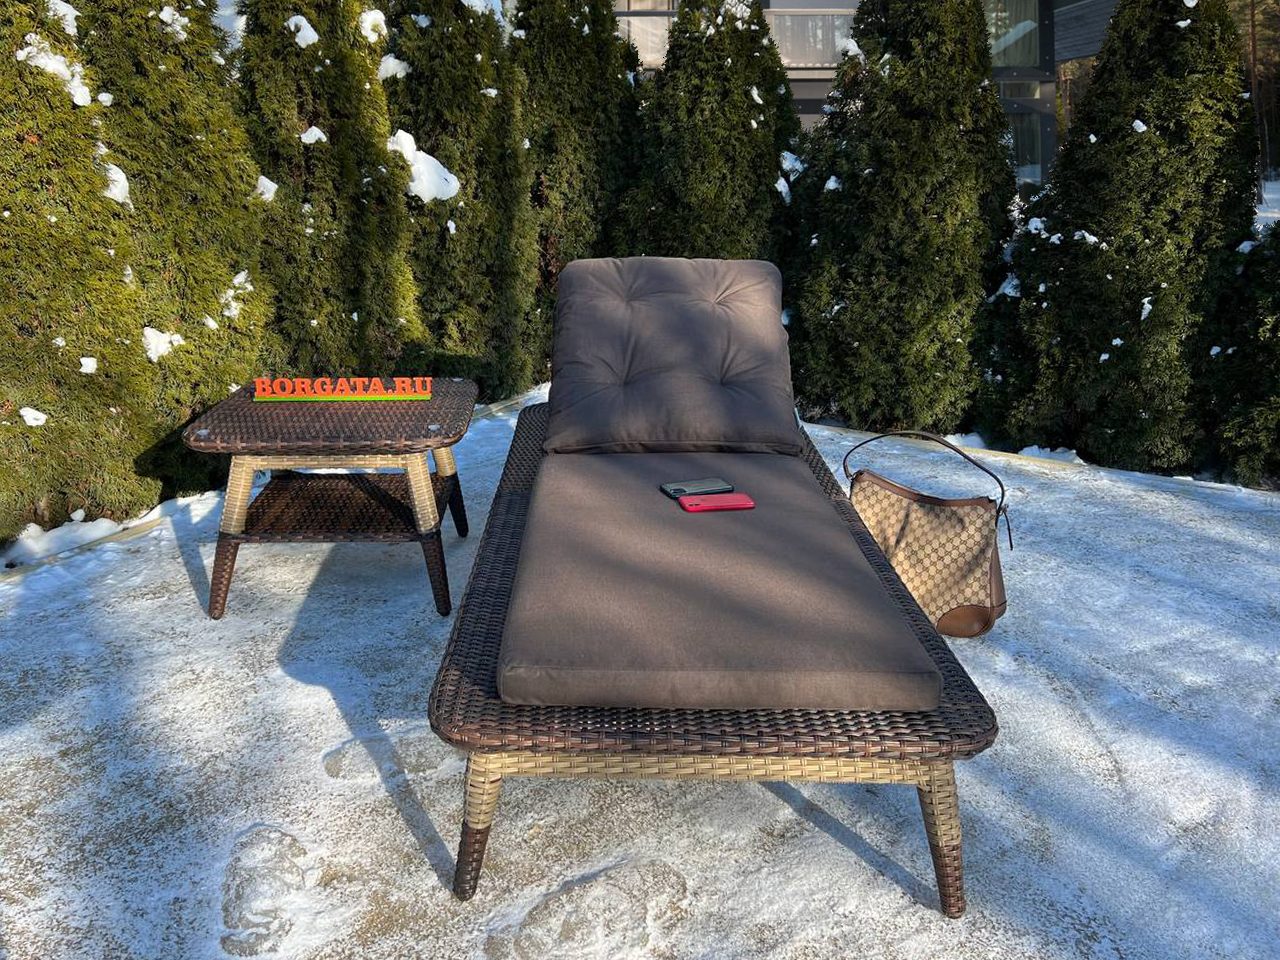 Лежак с колесиками BABYLON LUX brown/nature с чайным столиком для бани или зоны солярия